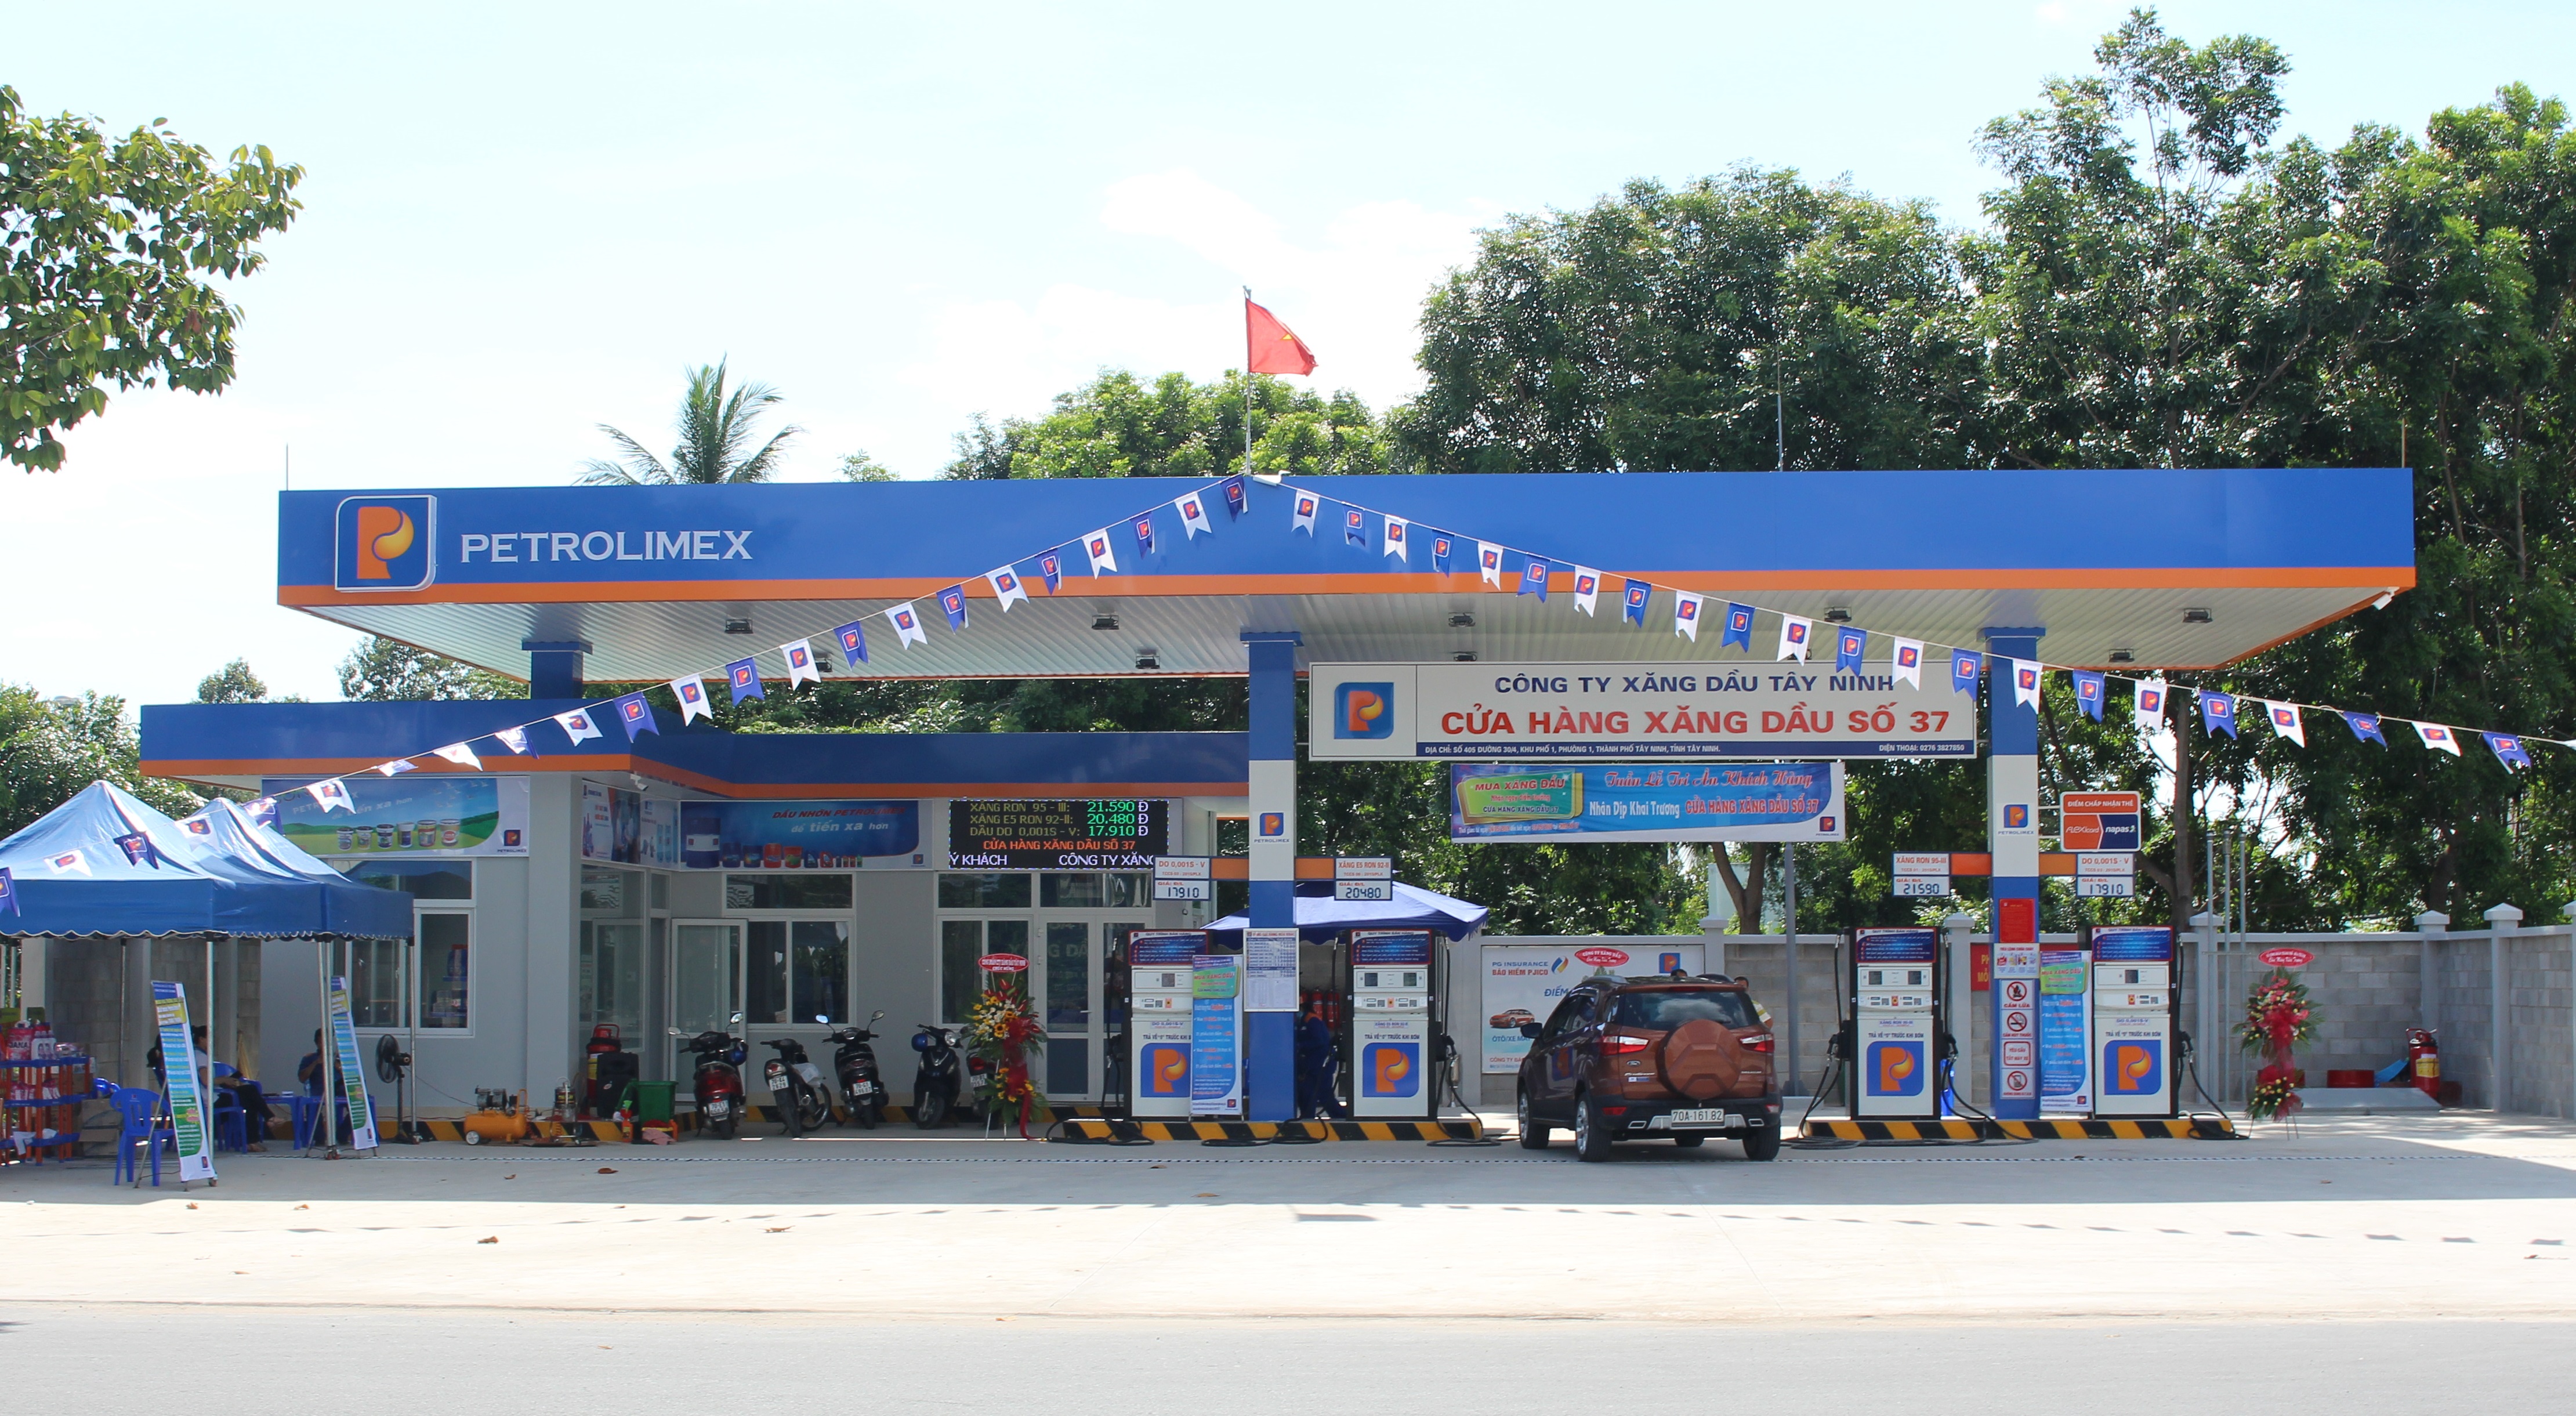 Petrolimex – Cửa Hàng Xăng Dầu Số 37 - 615 Đ. Trần Hưng Đạo, Thành phố Hồ Chí Minh